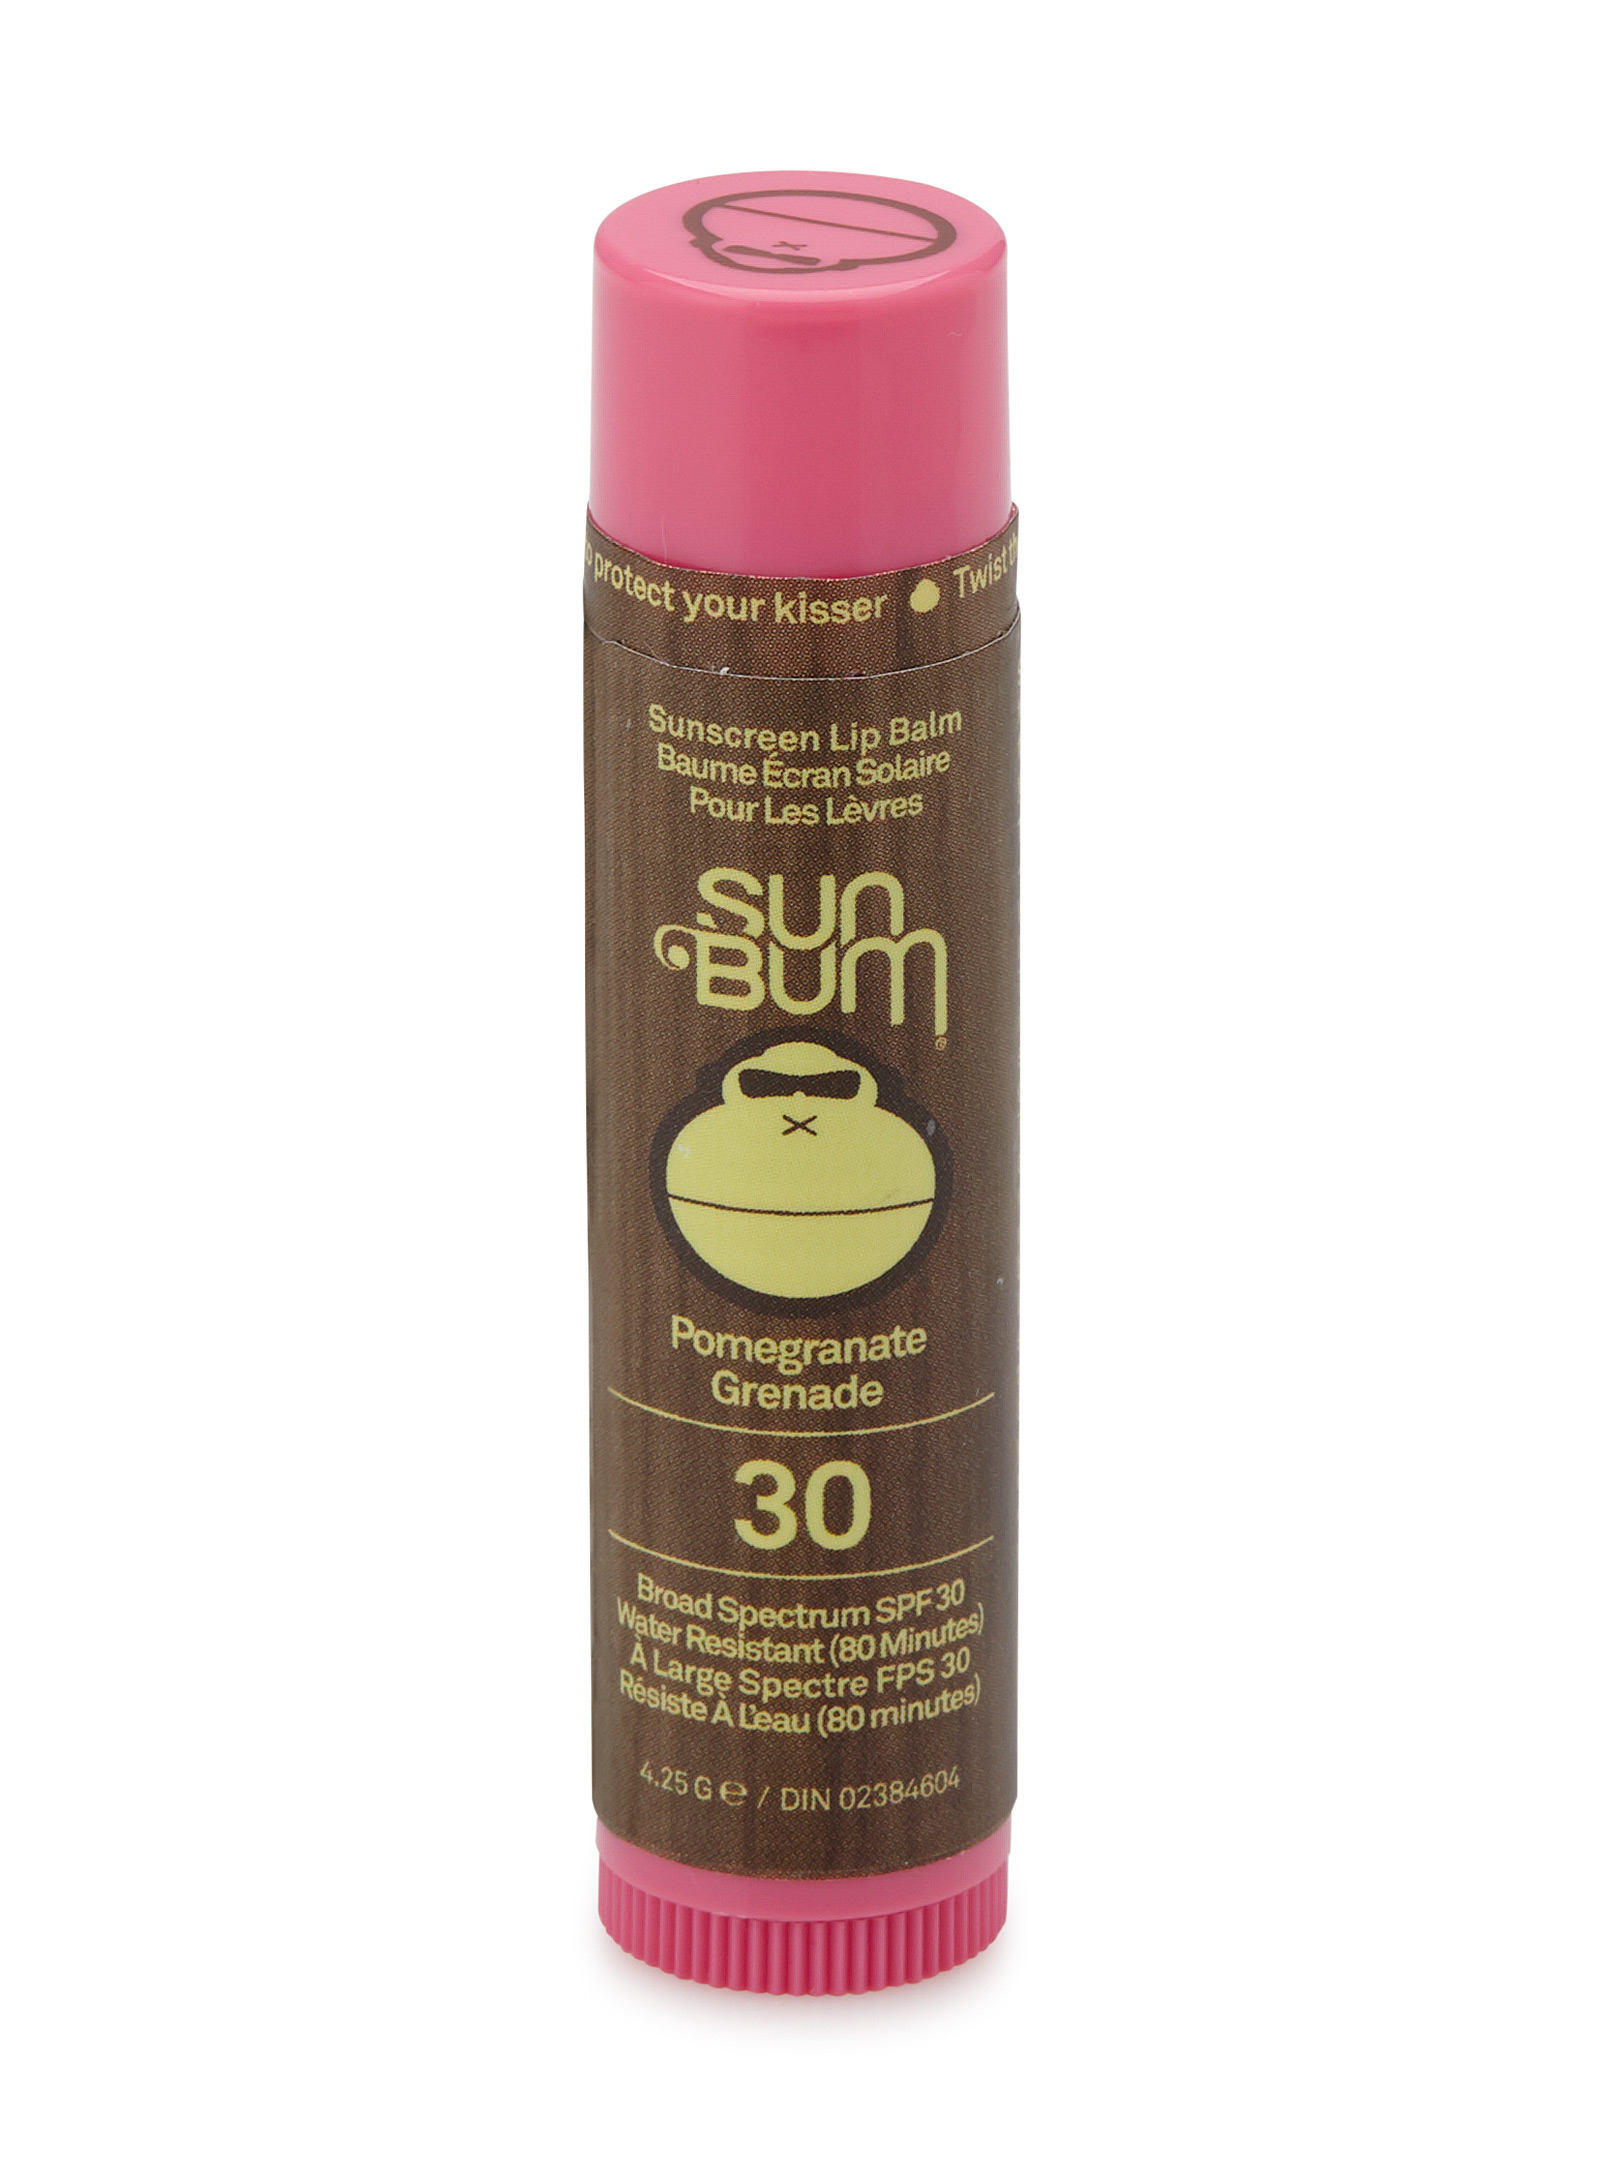 Sun Bum Pomegranate Spf 30 Sunscreen Lip Balm In Brown